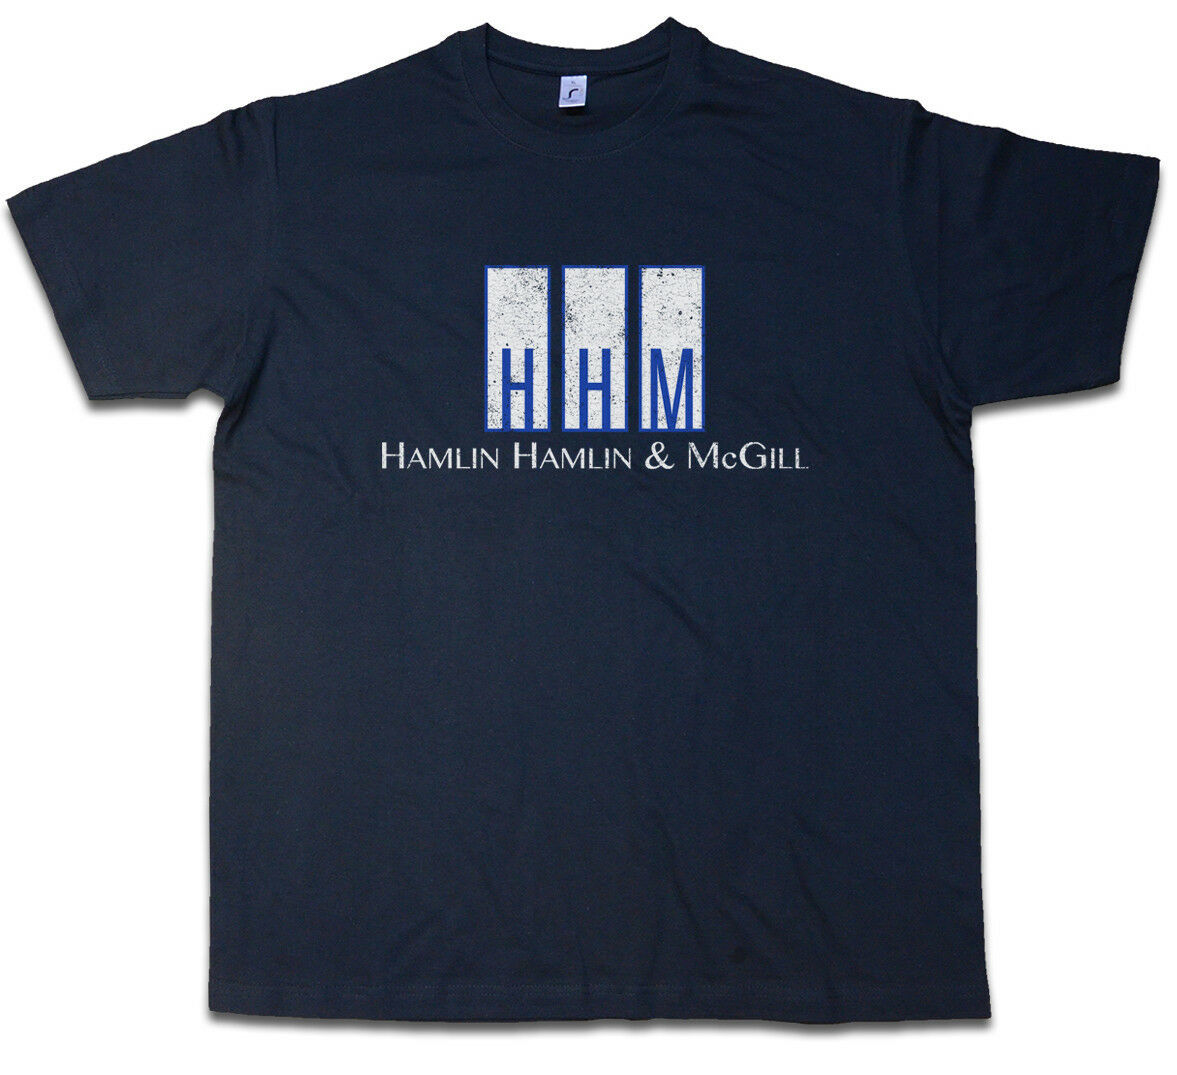 送料無料HAMLIN HAMLIN & MCGILL S~5XL Tシャツ